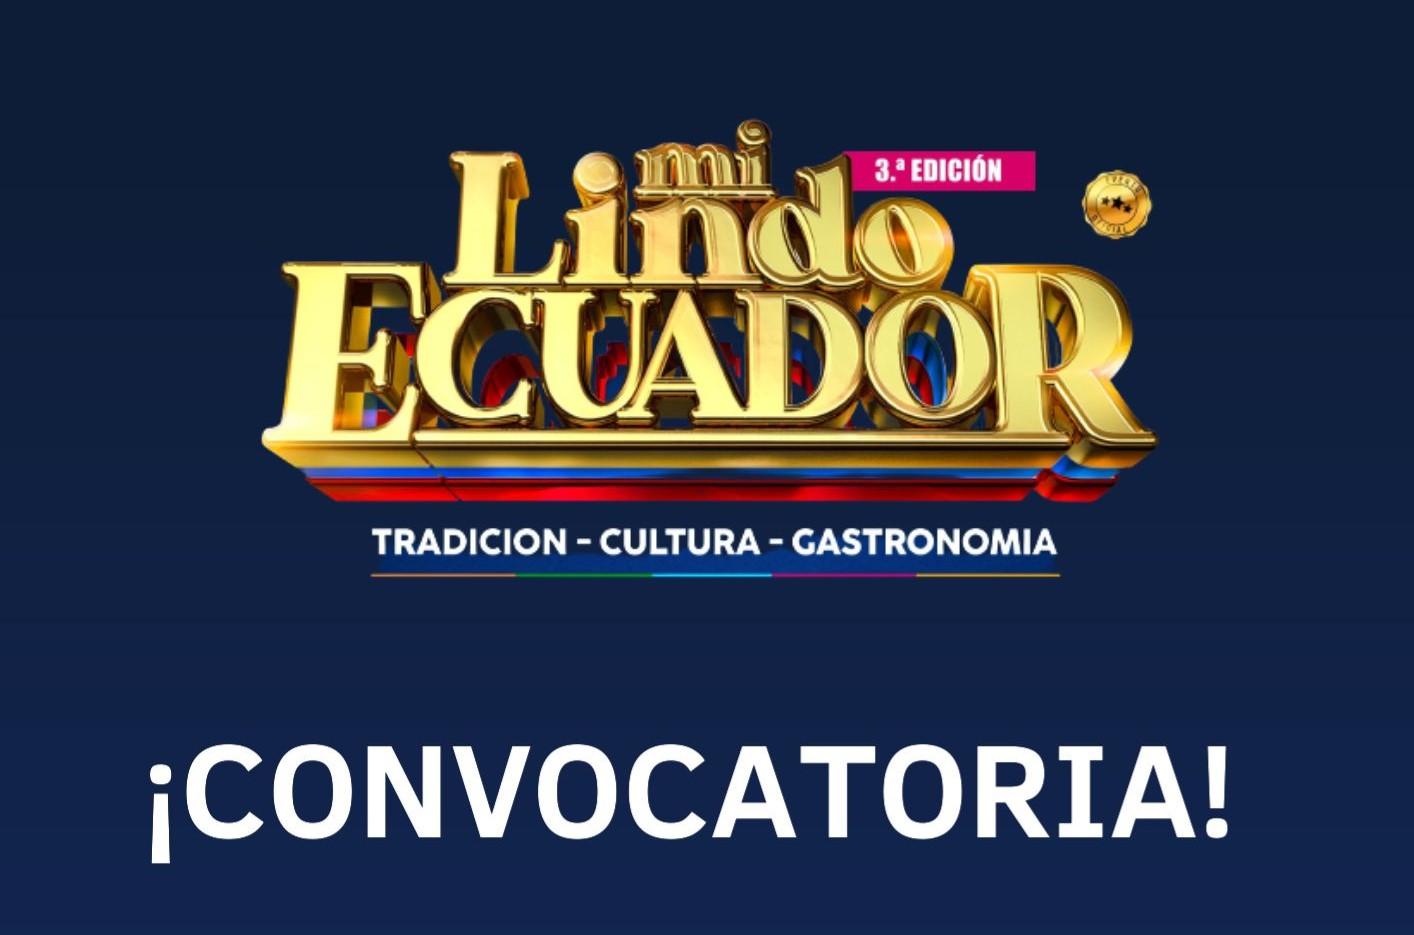 CONVOCATORIA: Fiesta Nacional “Mi Lindo Ecuador” Milán 2023 – Tercera Edición